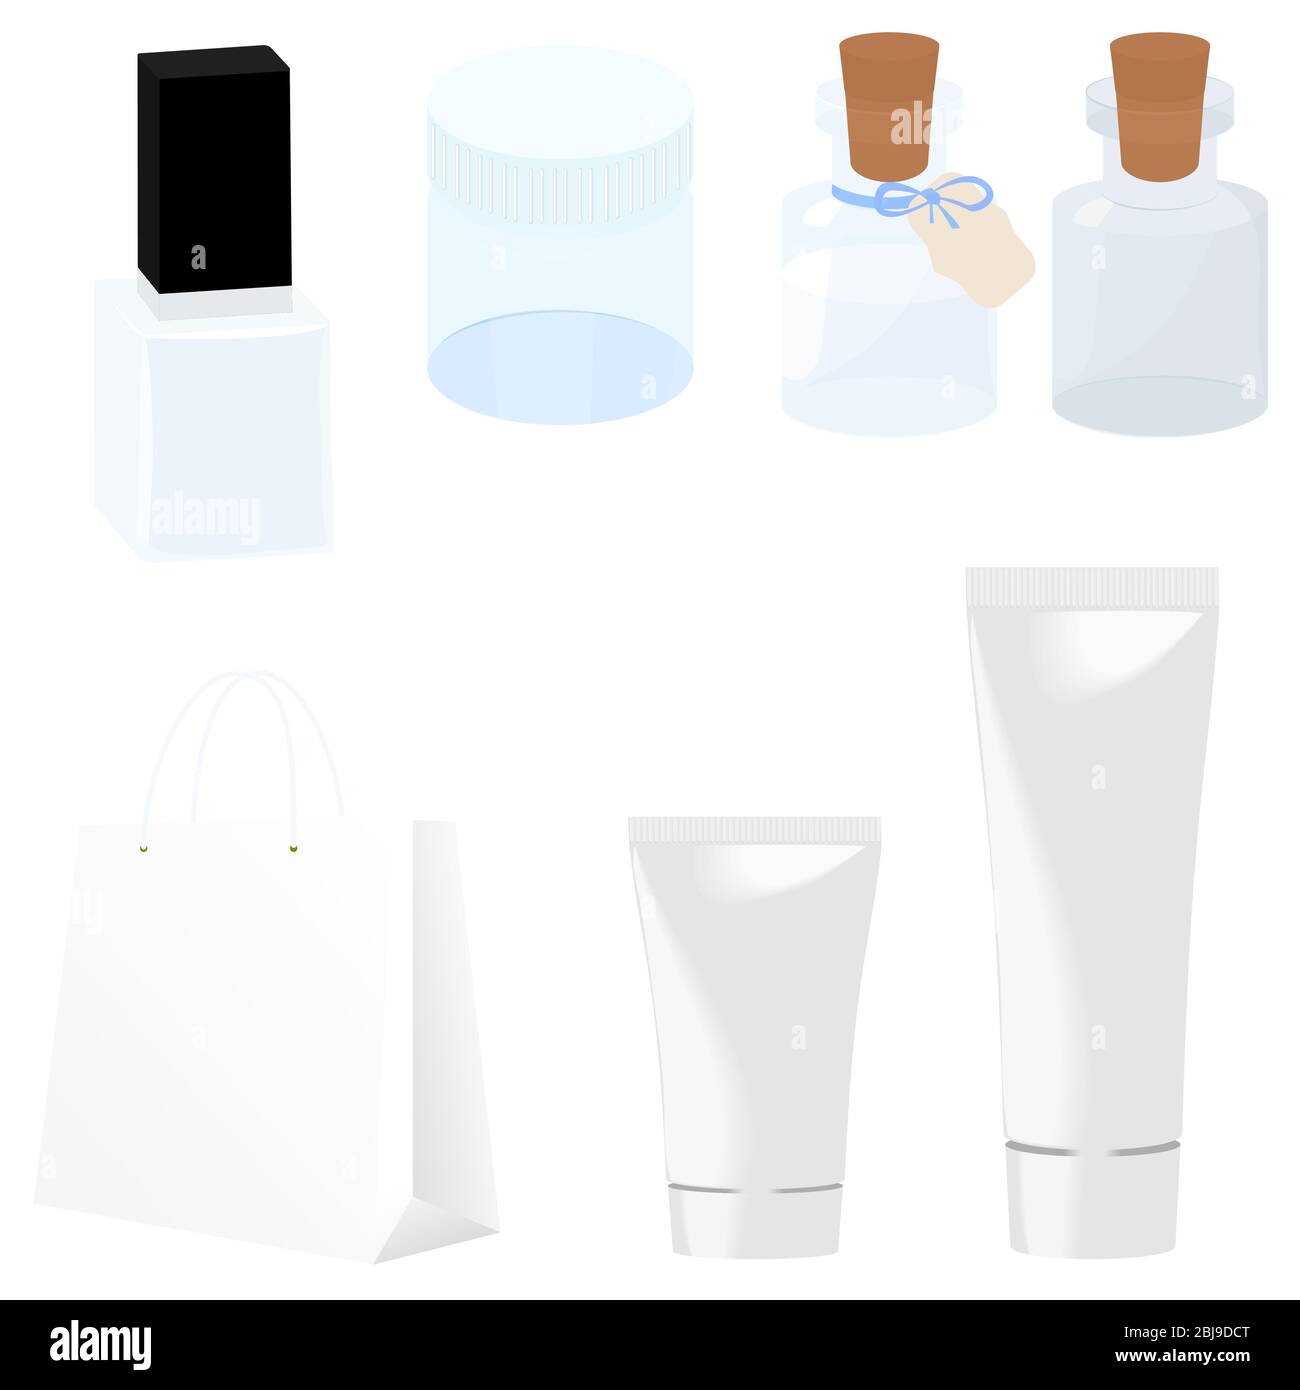 Impostare modelli di contenitori bianchi in plastica vuoti e puliti per il vuoto vettoriale. Flaconi, vasetto, provetta. simulazione 3d di un pacchetto cosmetico isolato su bianco. Illustrazione Vettoriale